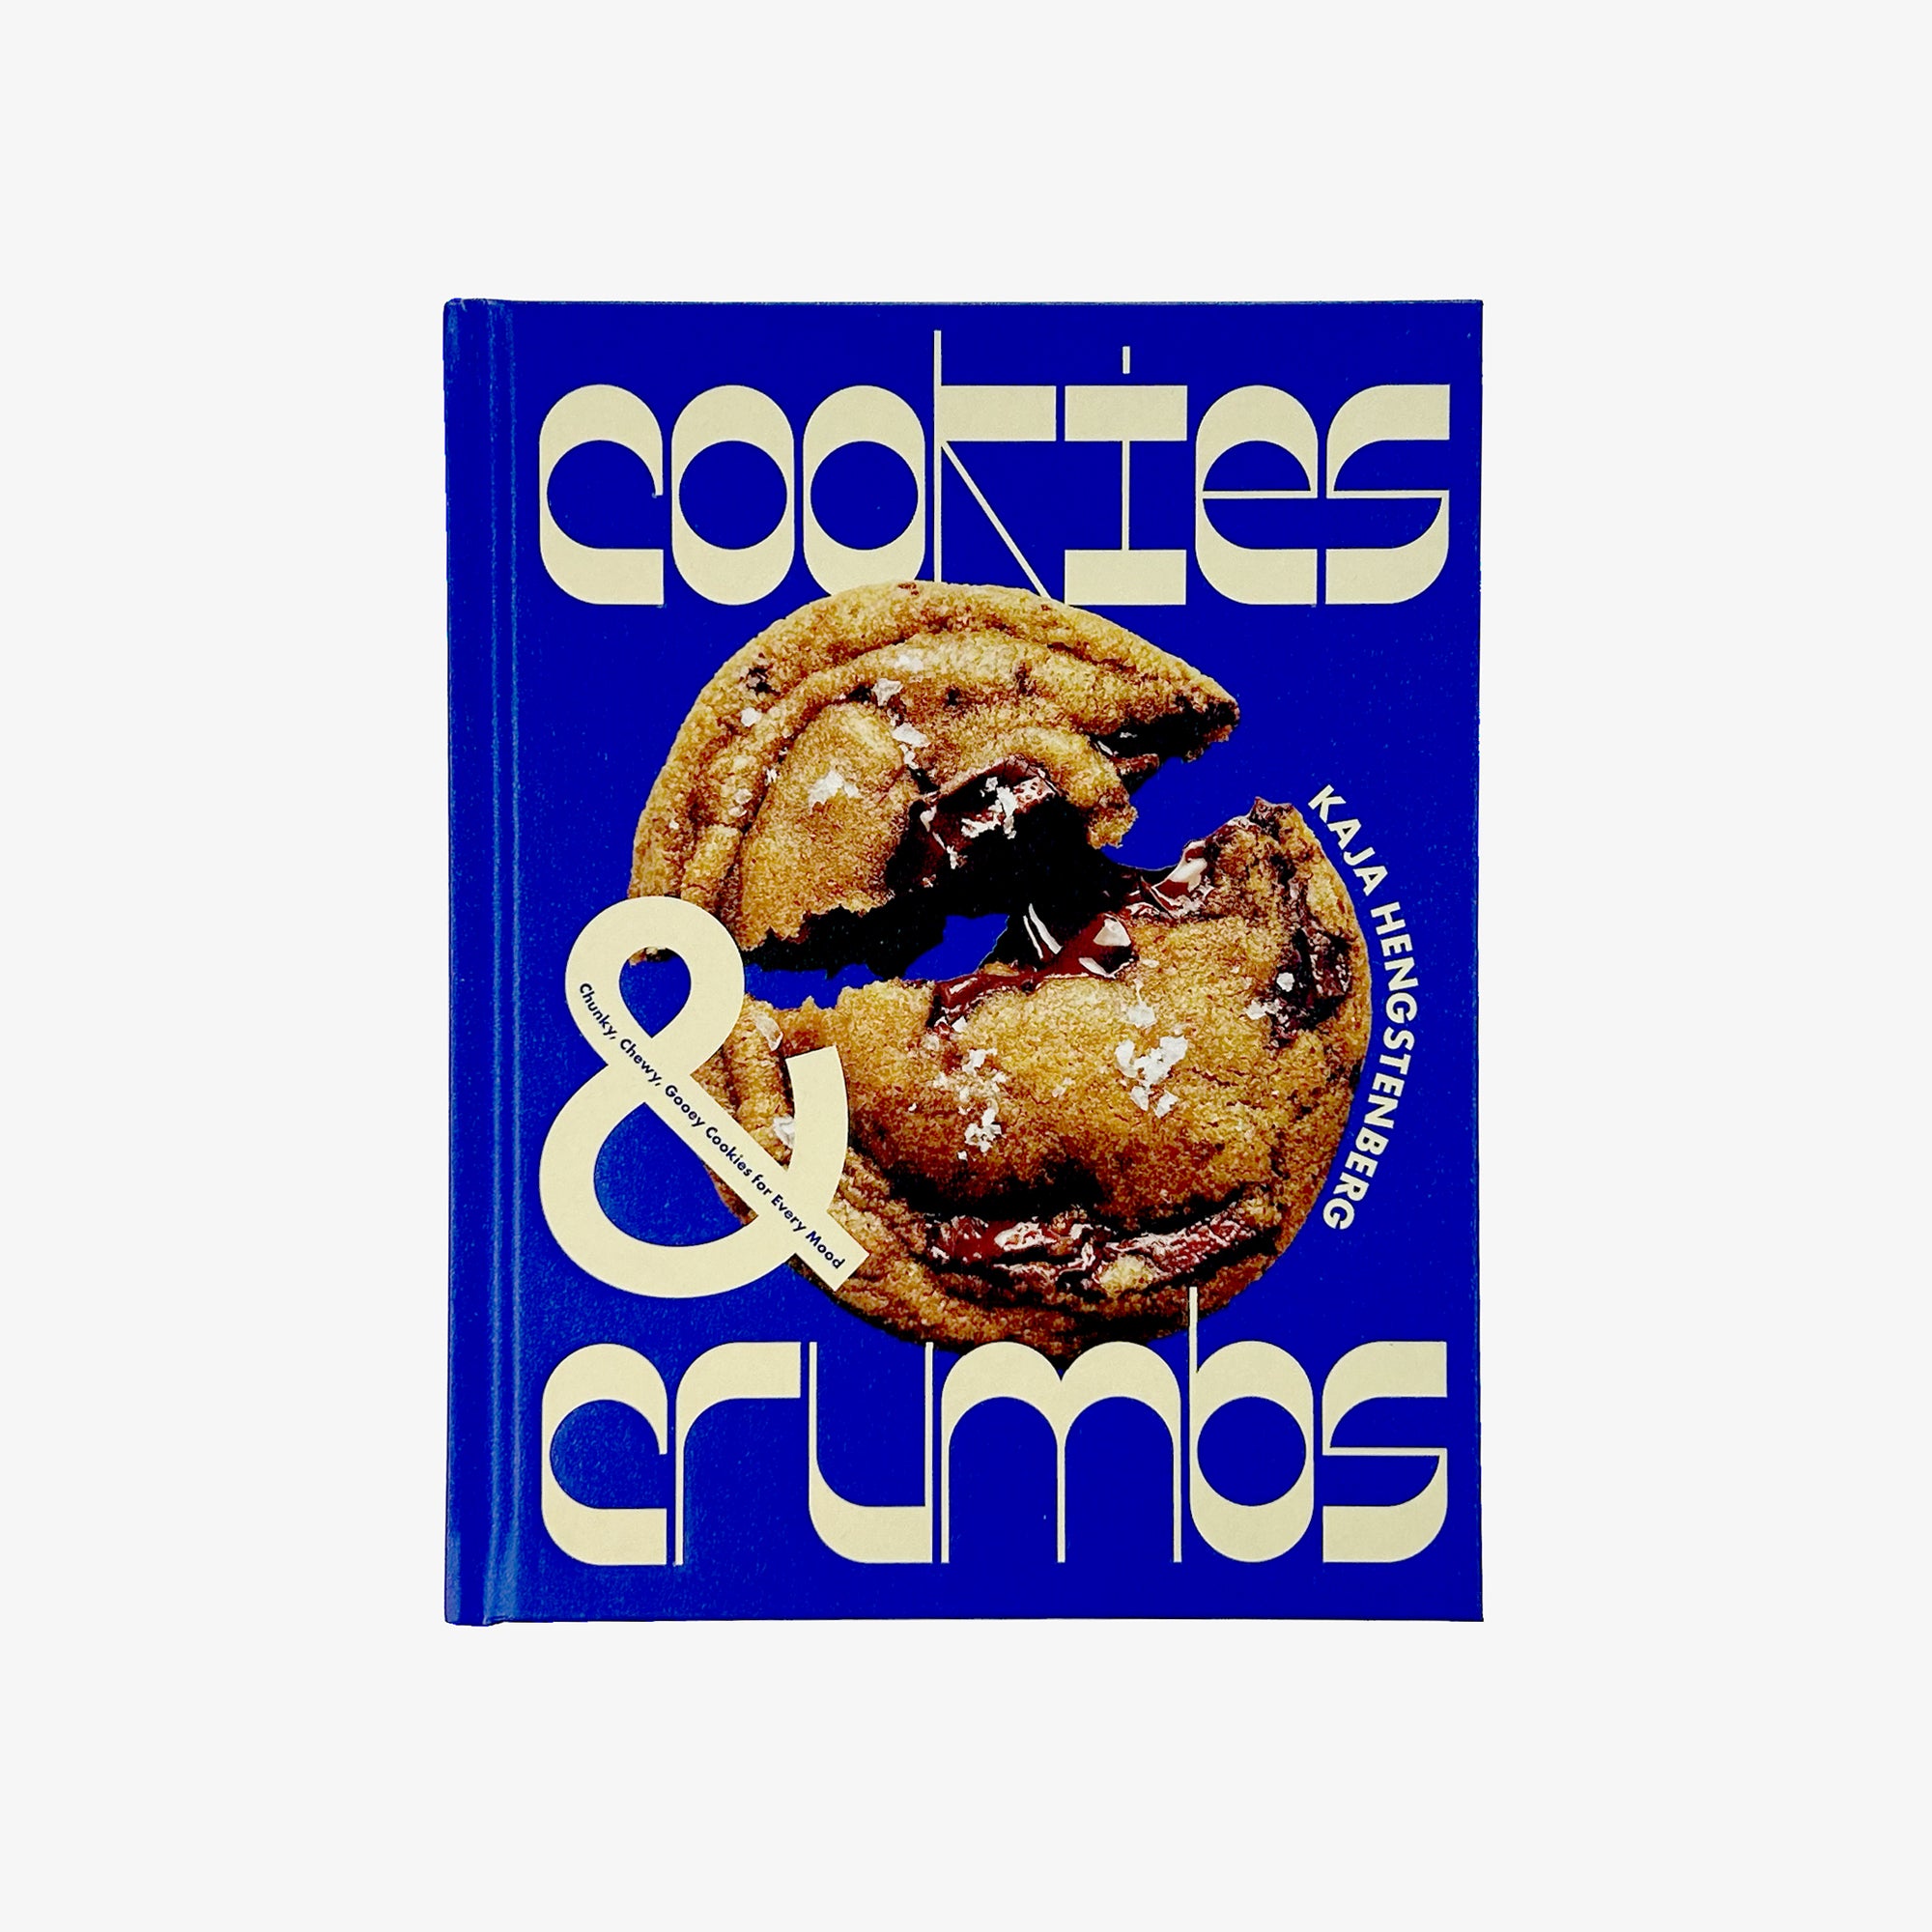 Cookies & Crumbs